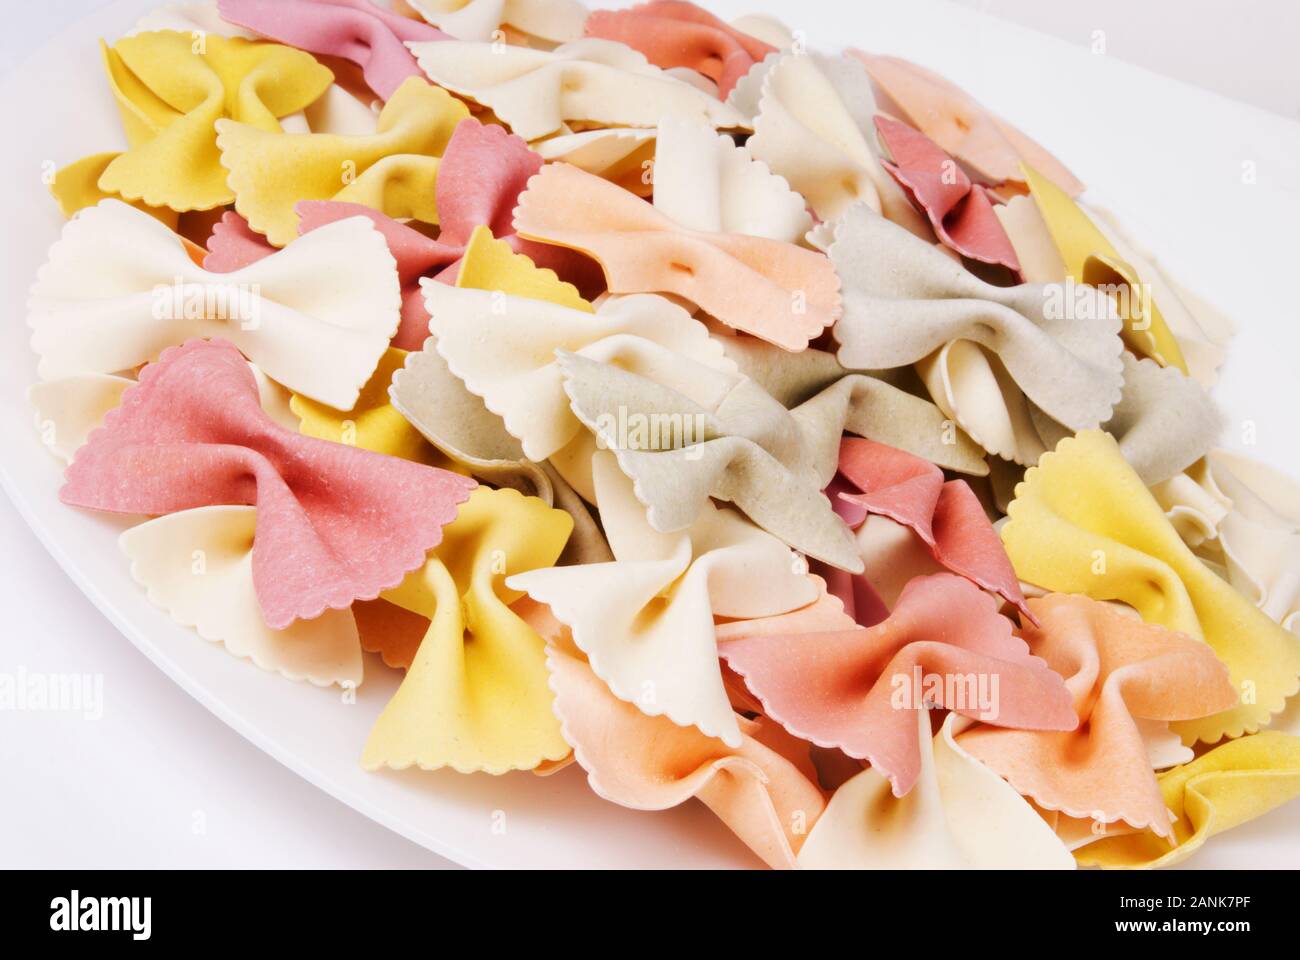 Colorati a secco il filtro bow tie italiano la pasta di semola di grano duro in una ciotola bianco. Multi colorata in giallo, rosso, bianco, arancio e grigio. Foto Stock